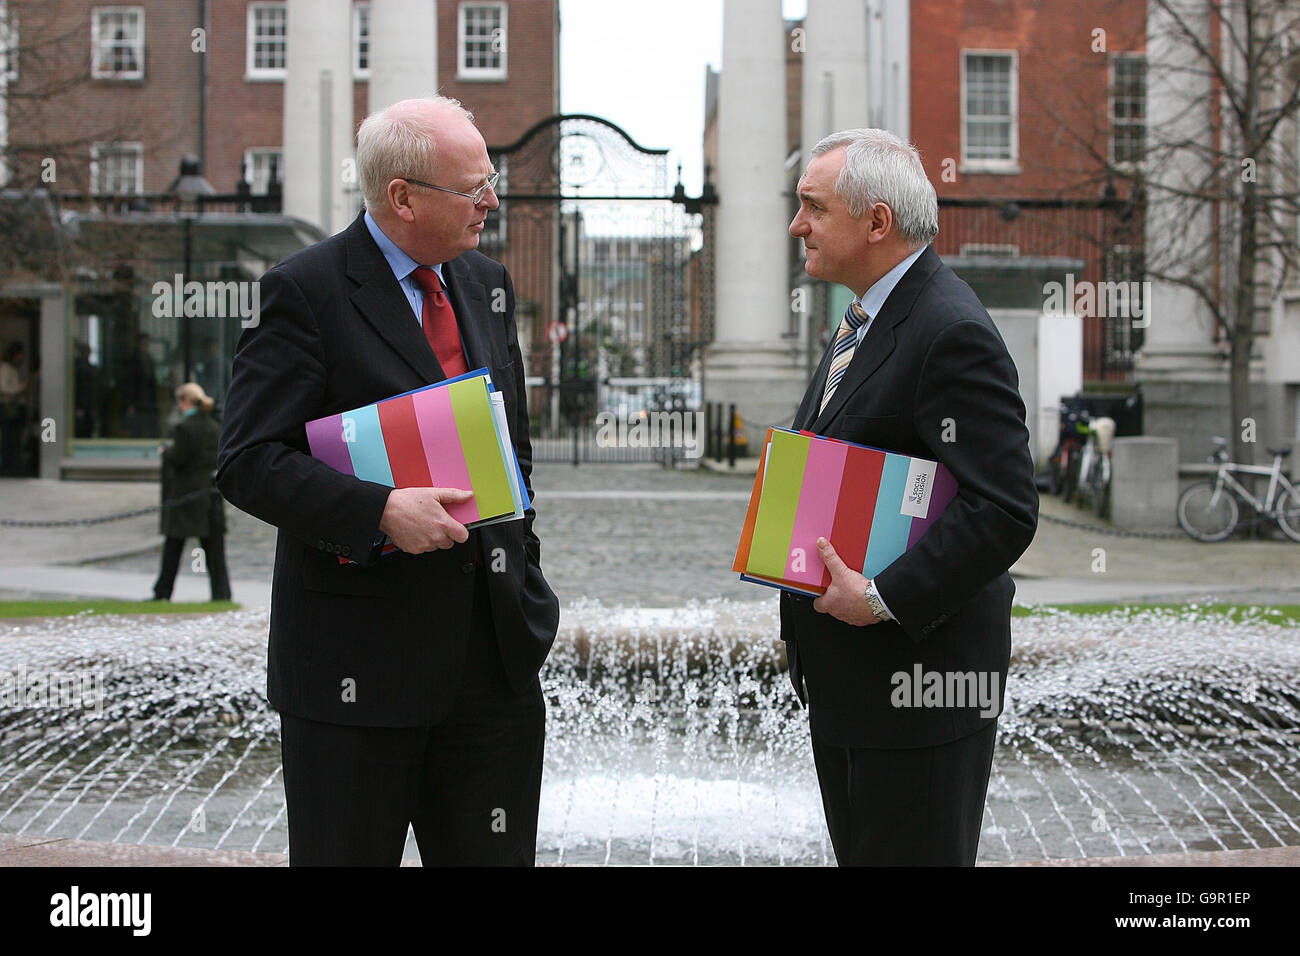 (De gauche à droite) Tainaiste Michael McDowell TD et Taoiseach Bertie Ahern TD à l'extérieur des bâtiments gouvernementaux, à Dublin, où le Plan d'action national pour l'inclusion sociale - bâtir une société inclusive, a été lancé aujourd'hui. Banque D'Images